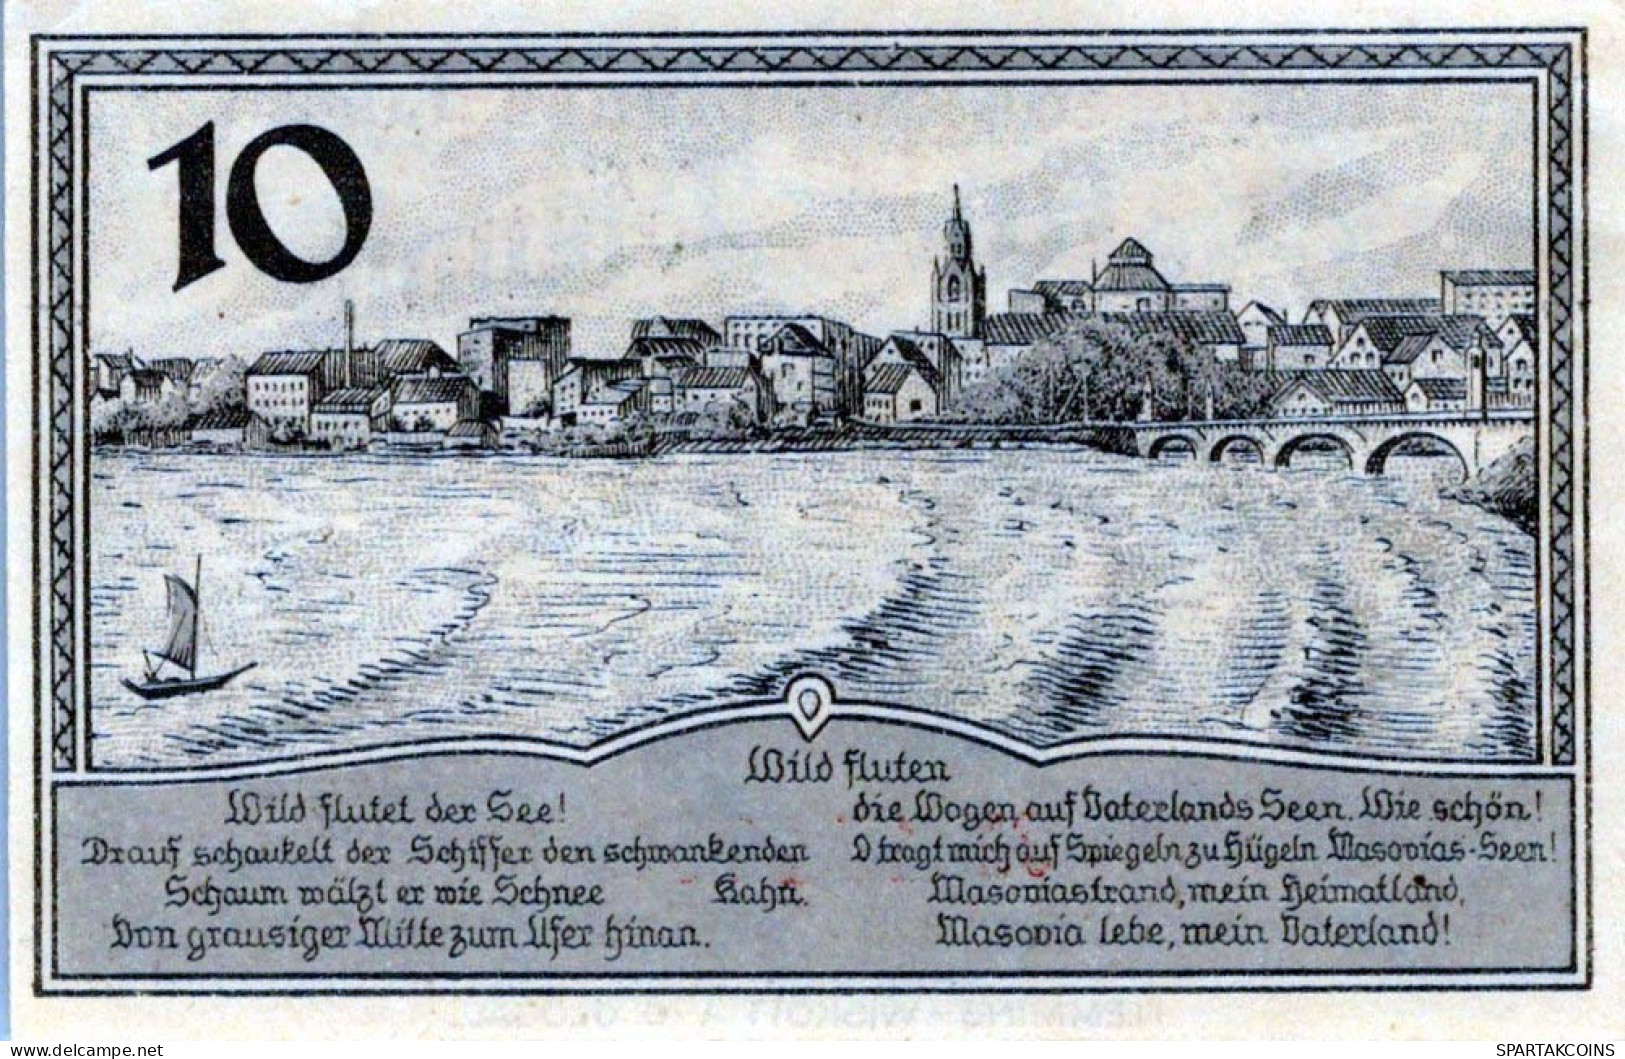 10 PFENNIG 1920 Stadt LYCK East PRUSSLAND UNC DEUTSCHLAND Notgeld Banknote #PI671 - [11] Local Banknote Issues